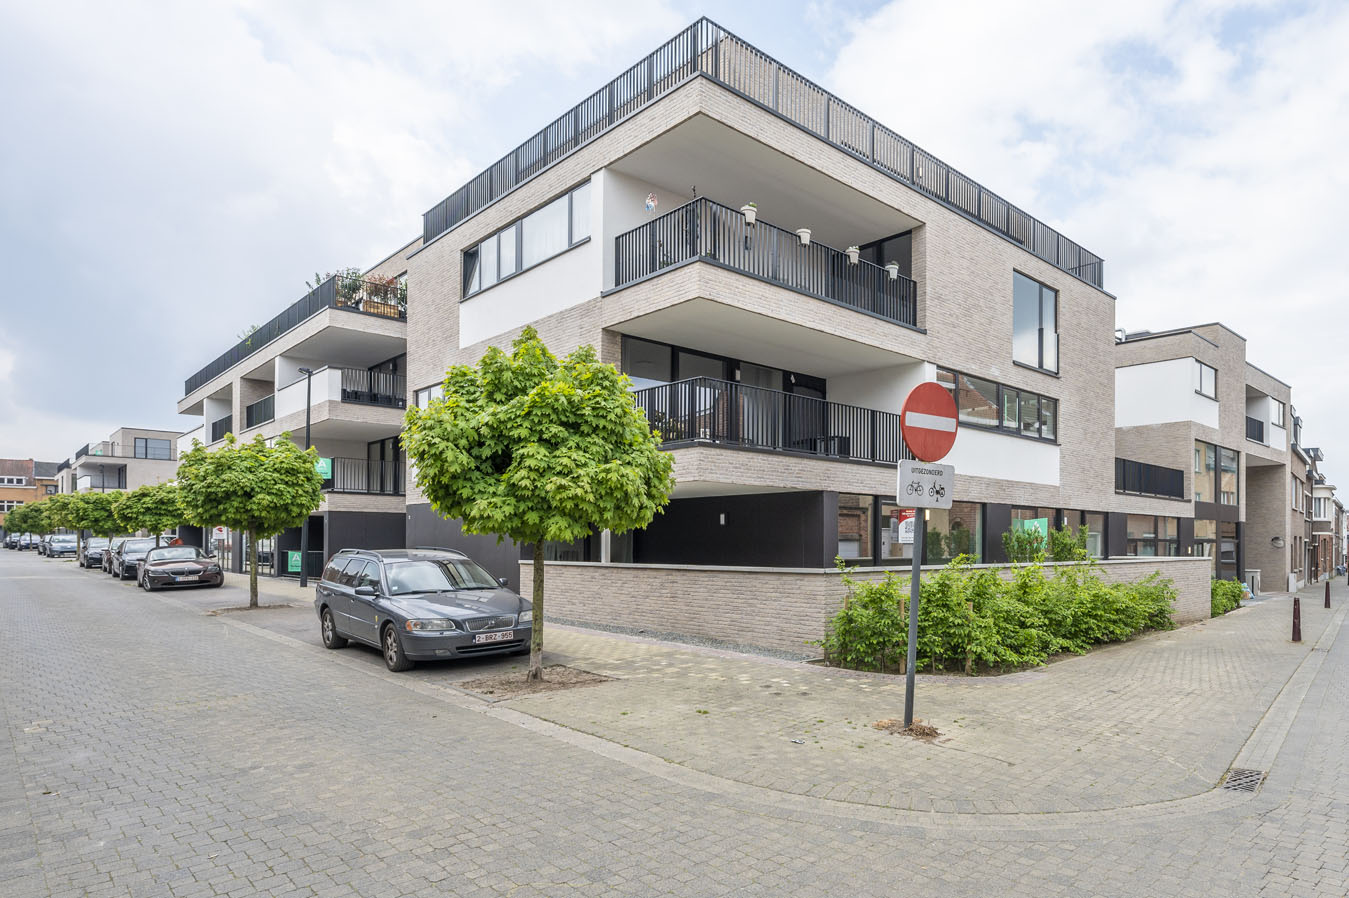 Bostoen Residentie Clavis gevel nieuwbouwappartementen in Aalst